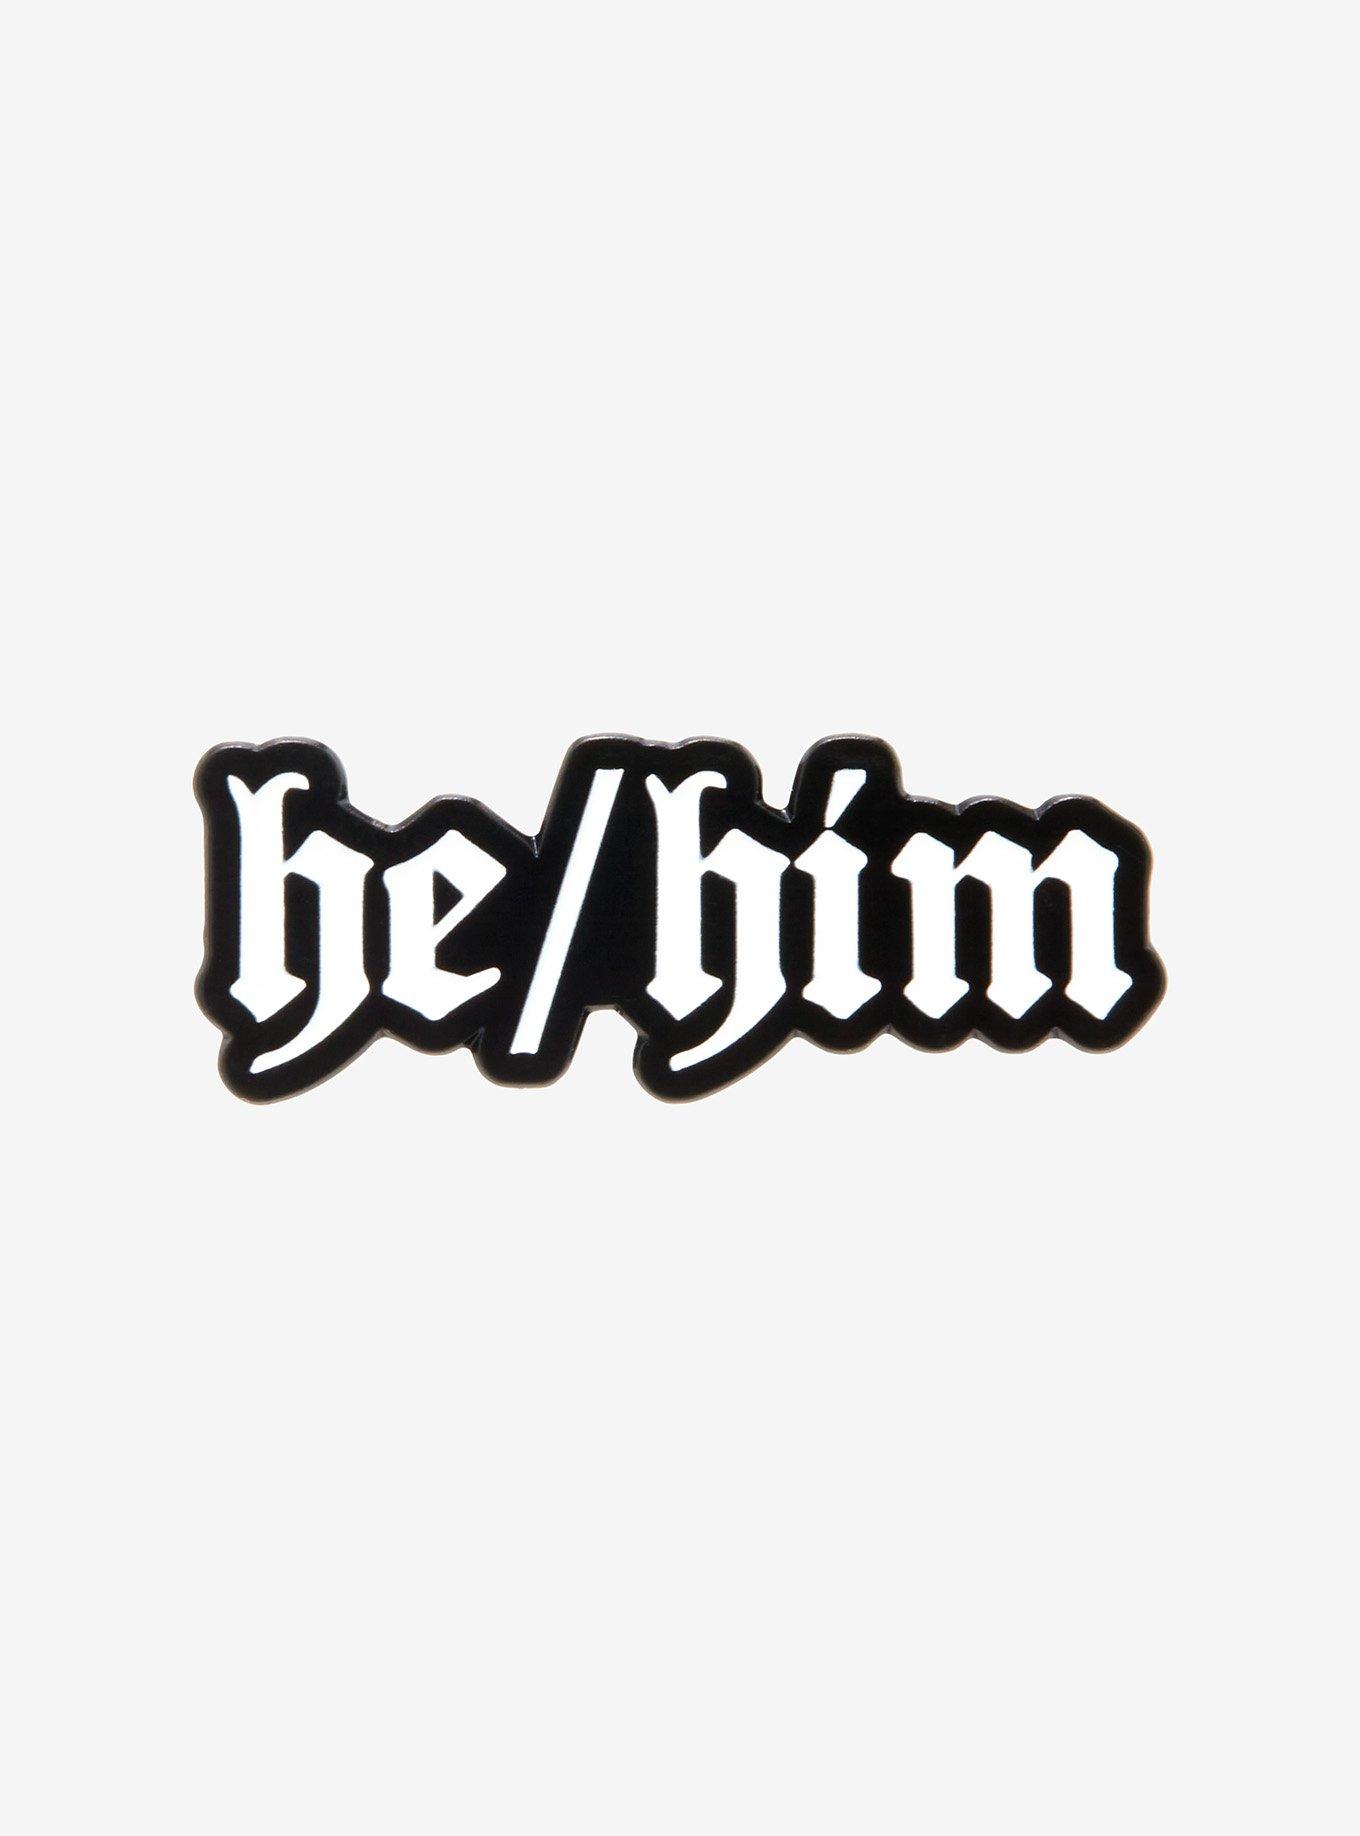 He/Him Pronoun Gothic Font Enamel Pin